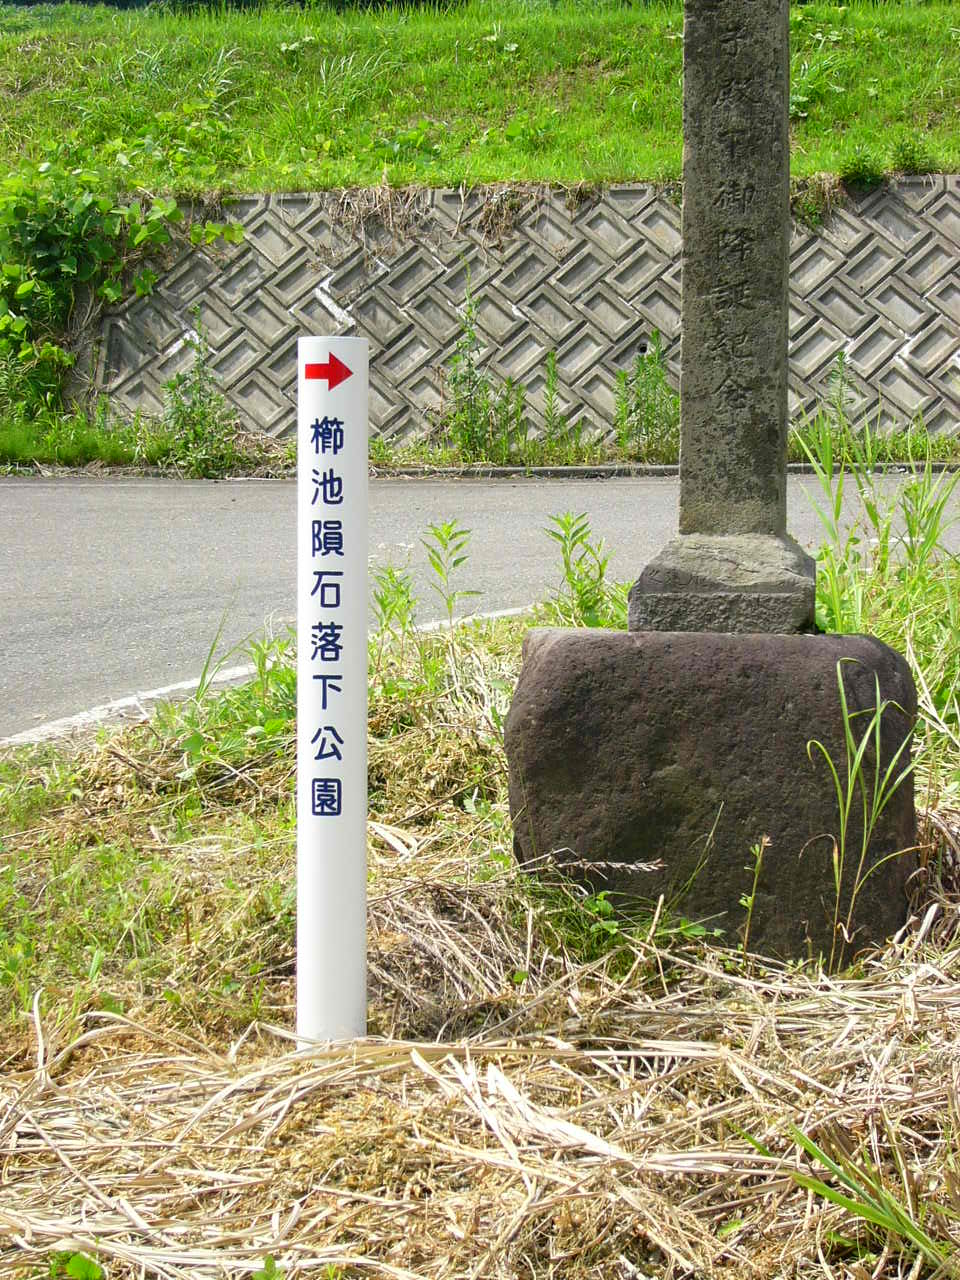 隕石落下公園の標識